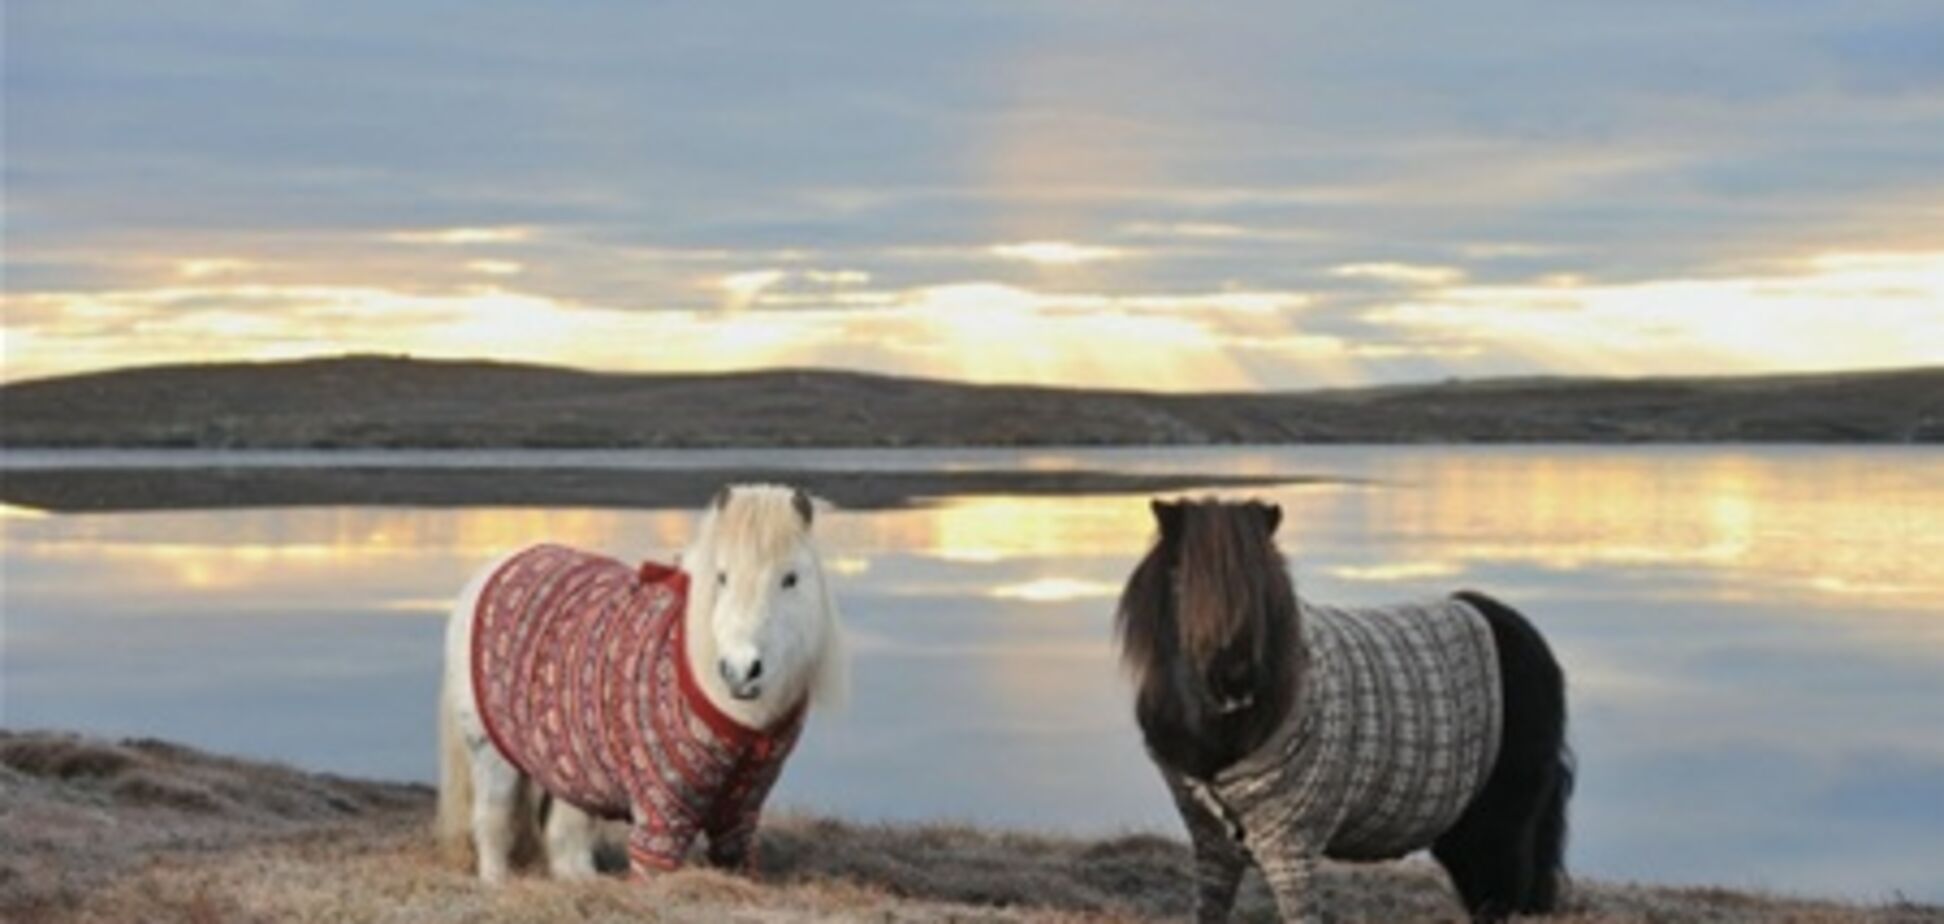 Пони в свитерах рекламируют Шотландию